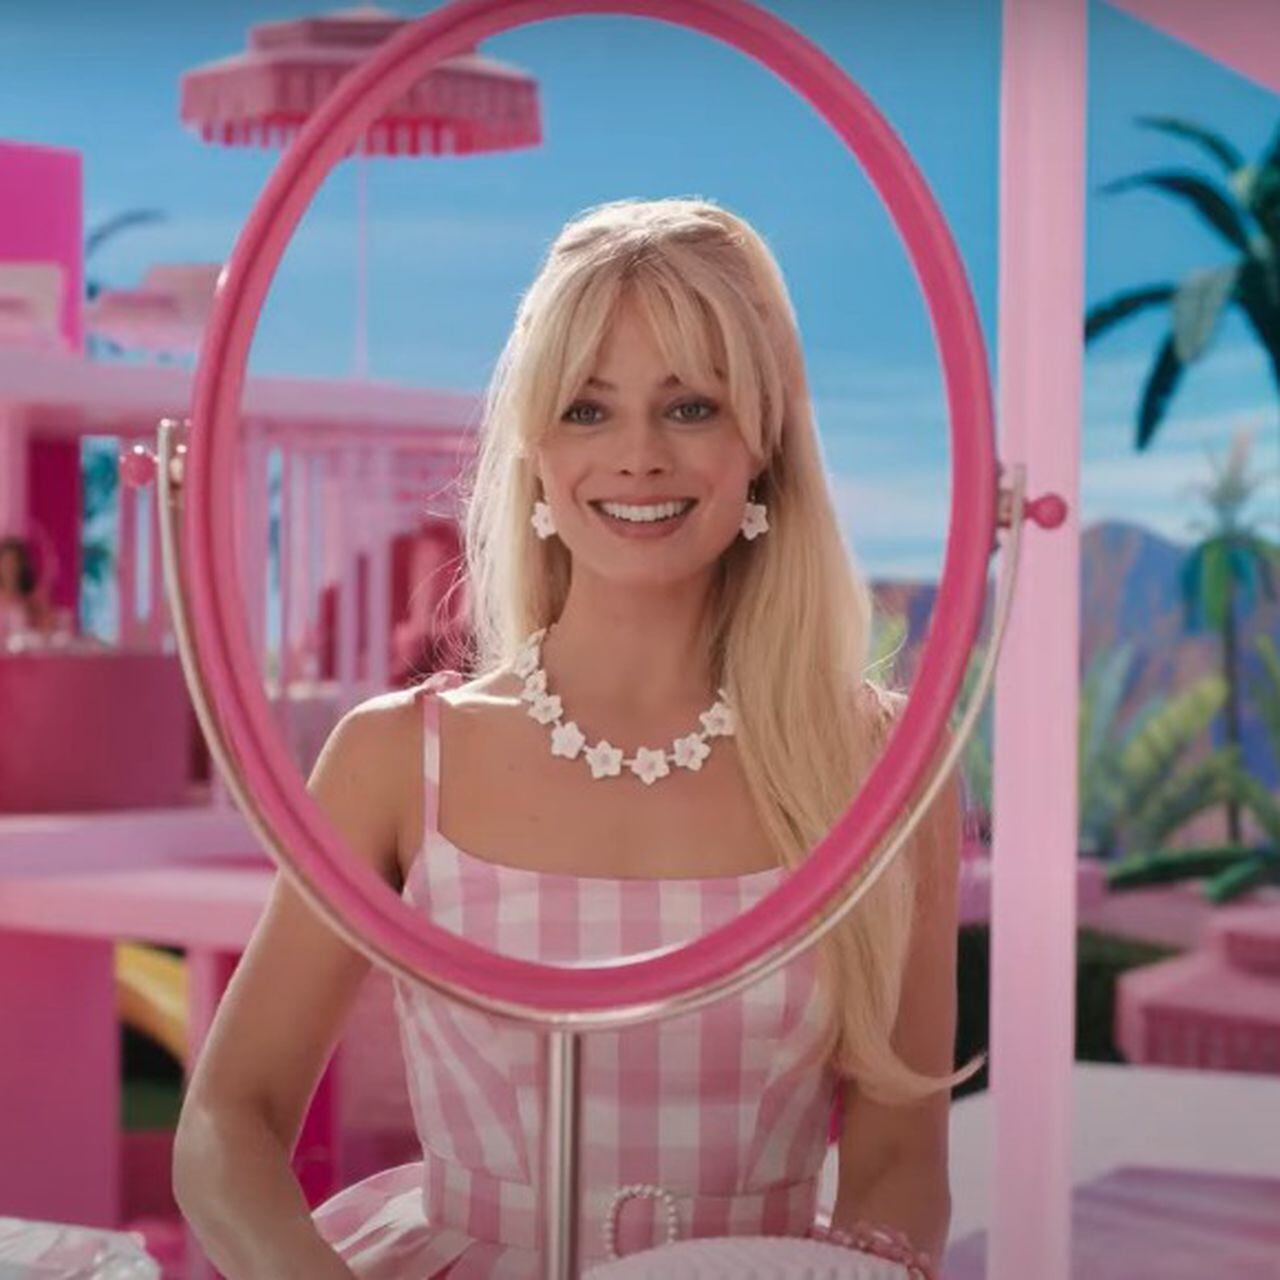 El fenómeno 'Barbie' llega al Cine de Verano de Colmenar Viejo este sábado, Actualidad